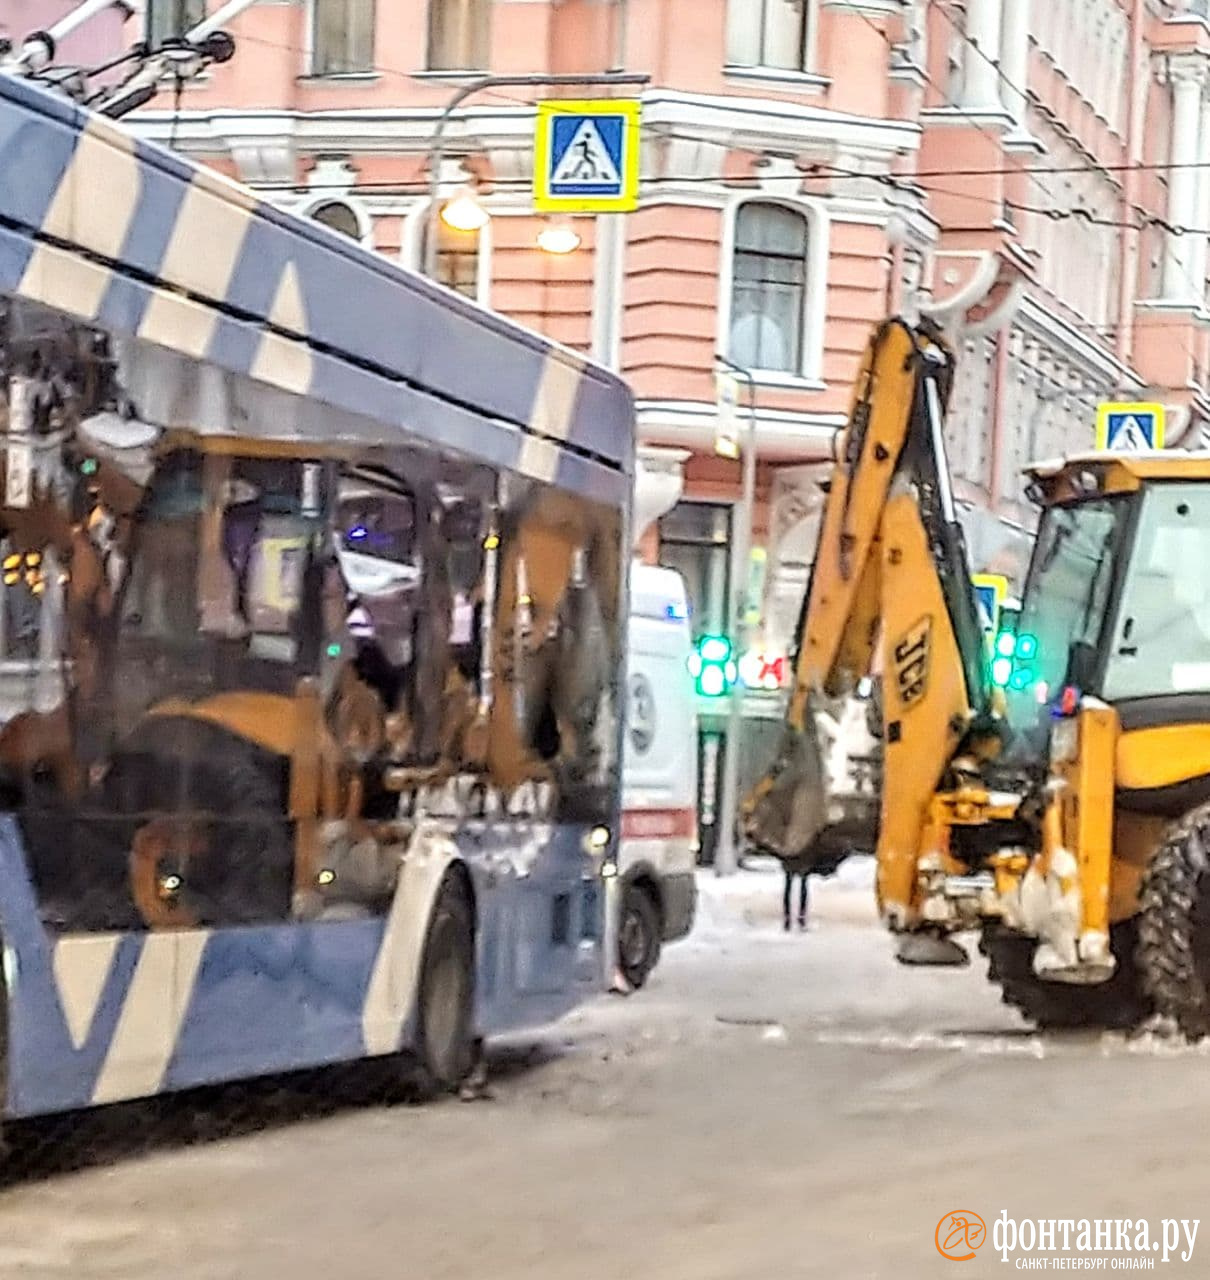 Снегоуборочный трактор врезался в троллейбус на Мытнинской, есть пострадавший